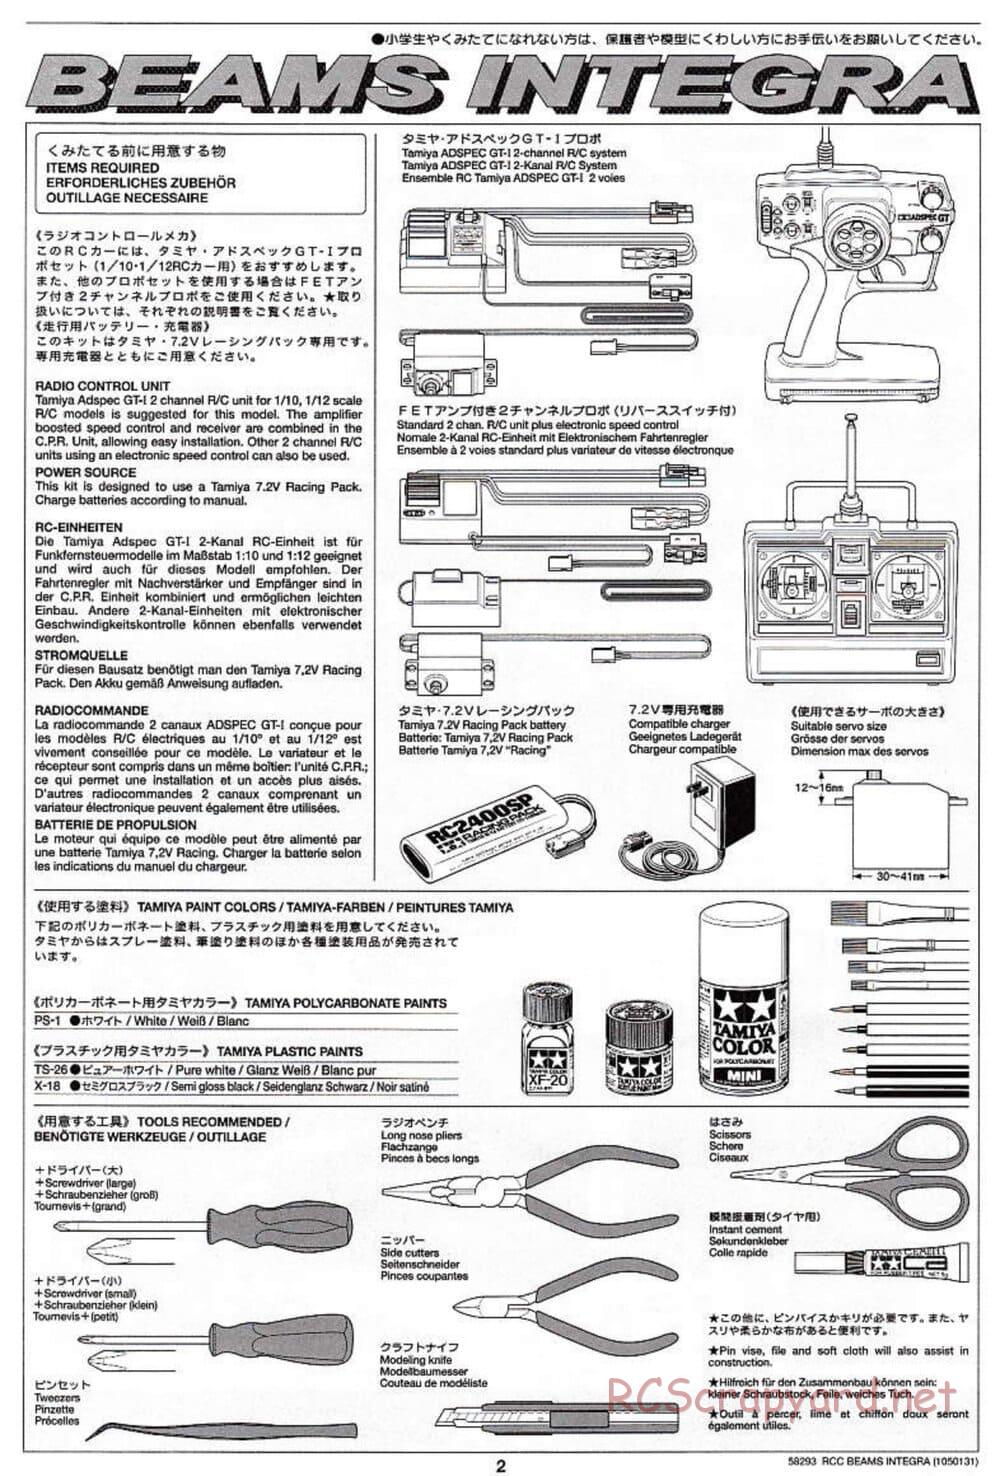 Tamiya - Beams Integra - TL-01 LA Chassis - Manual - Page 2